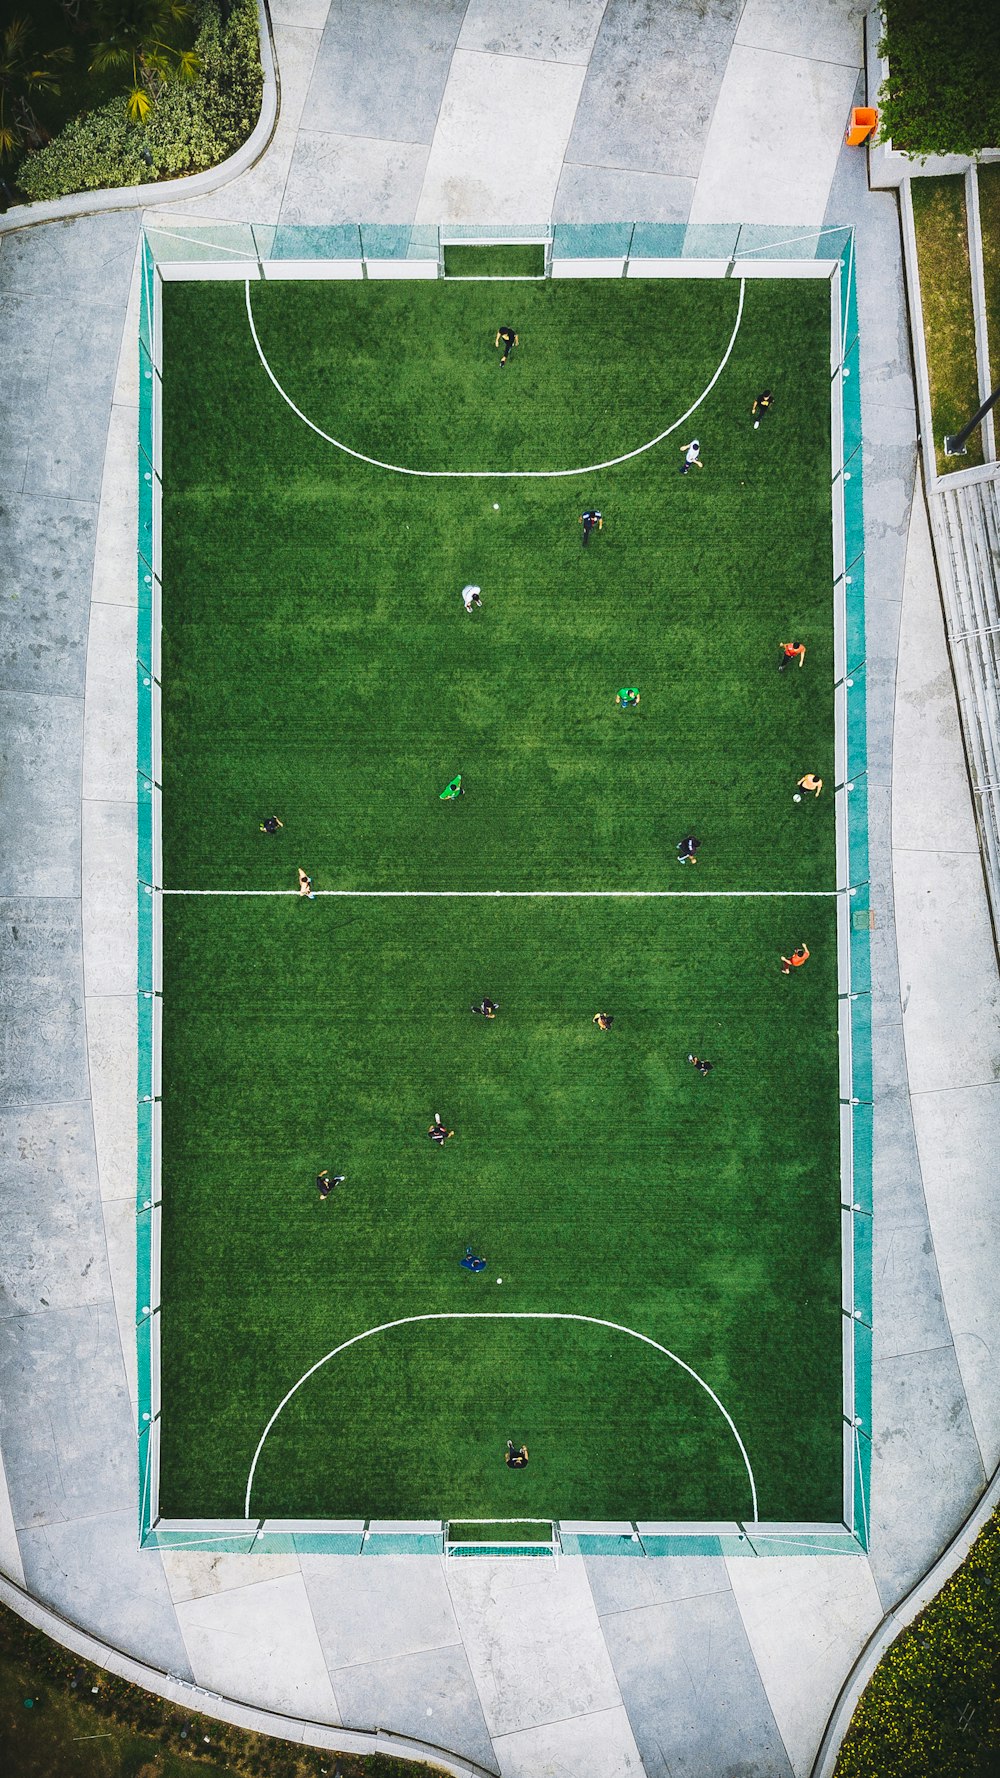 Fotografía aérea de gente jugando al fútbol